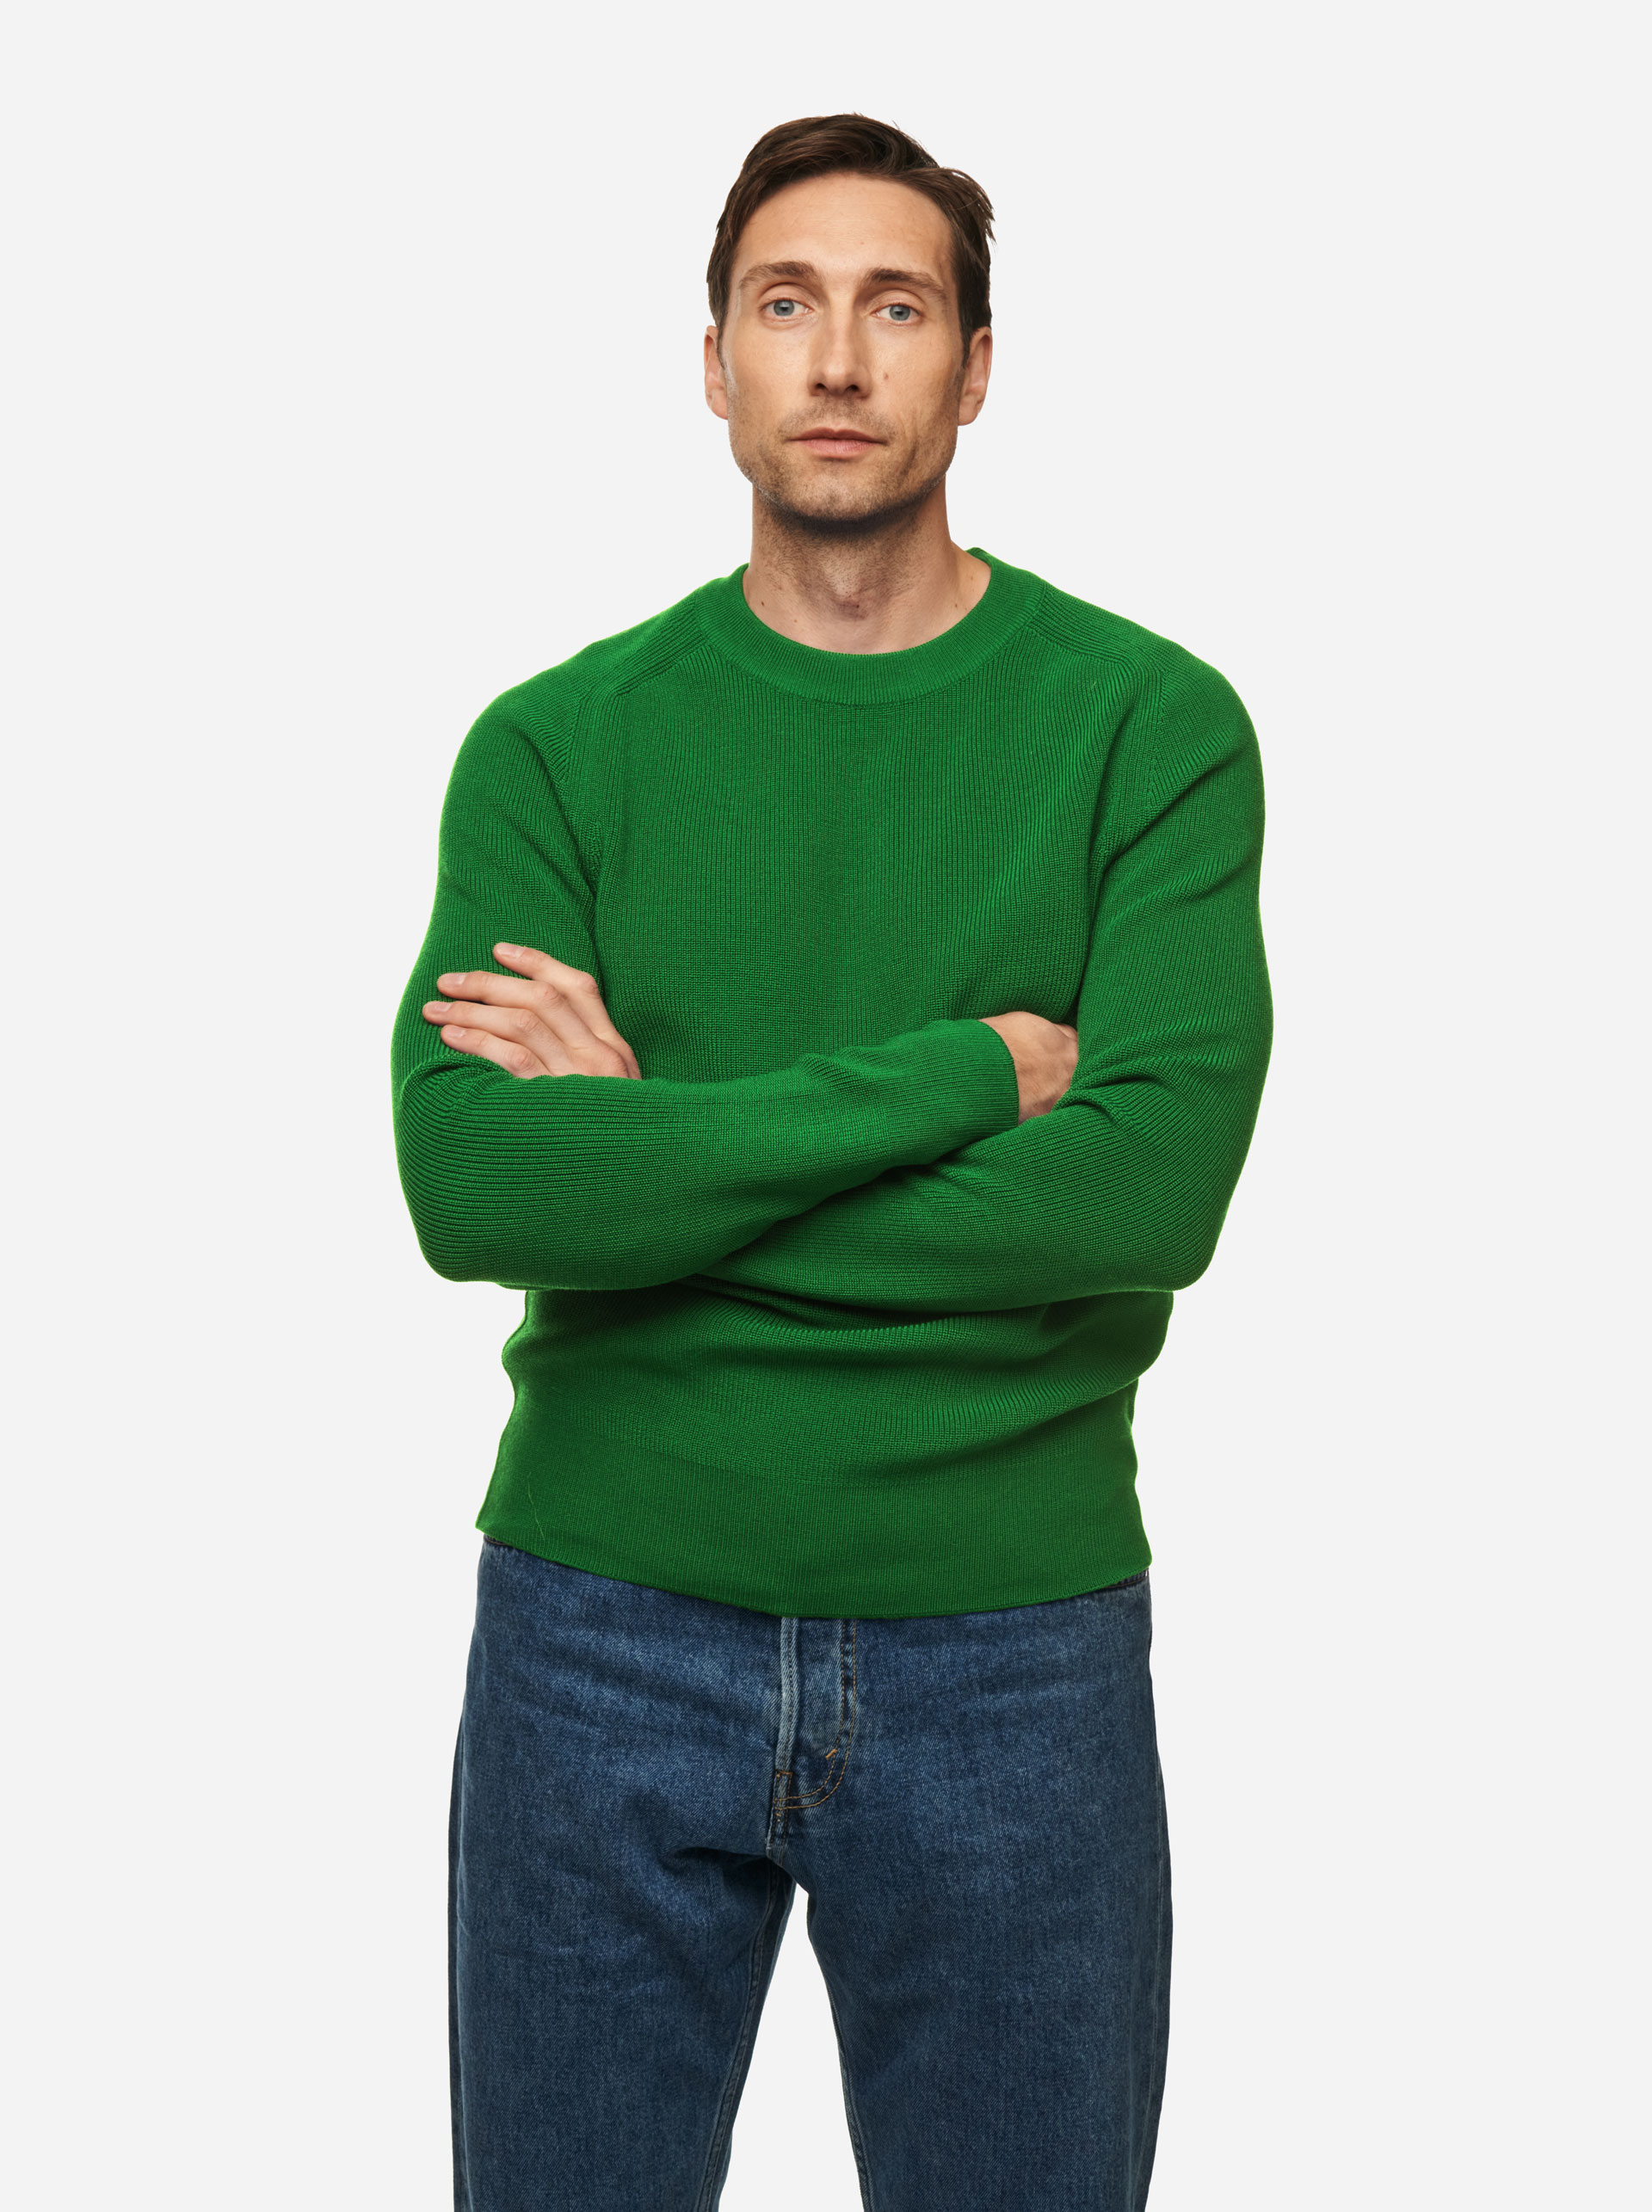 Teym - The Merino Sweater - Men - Bright Green - 1